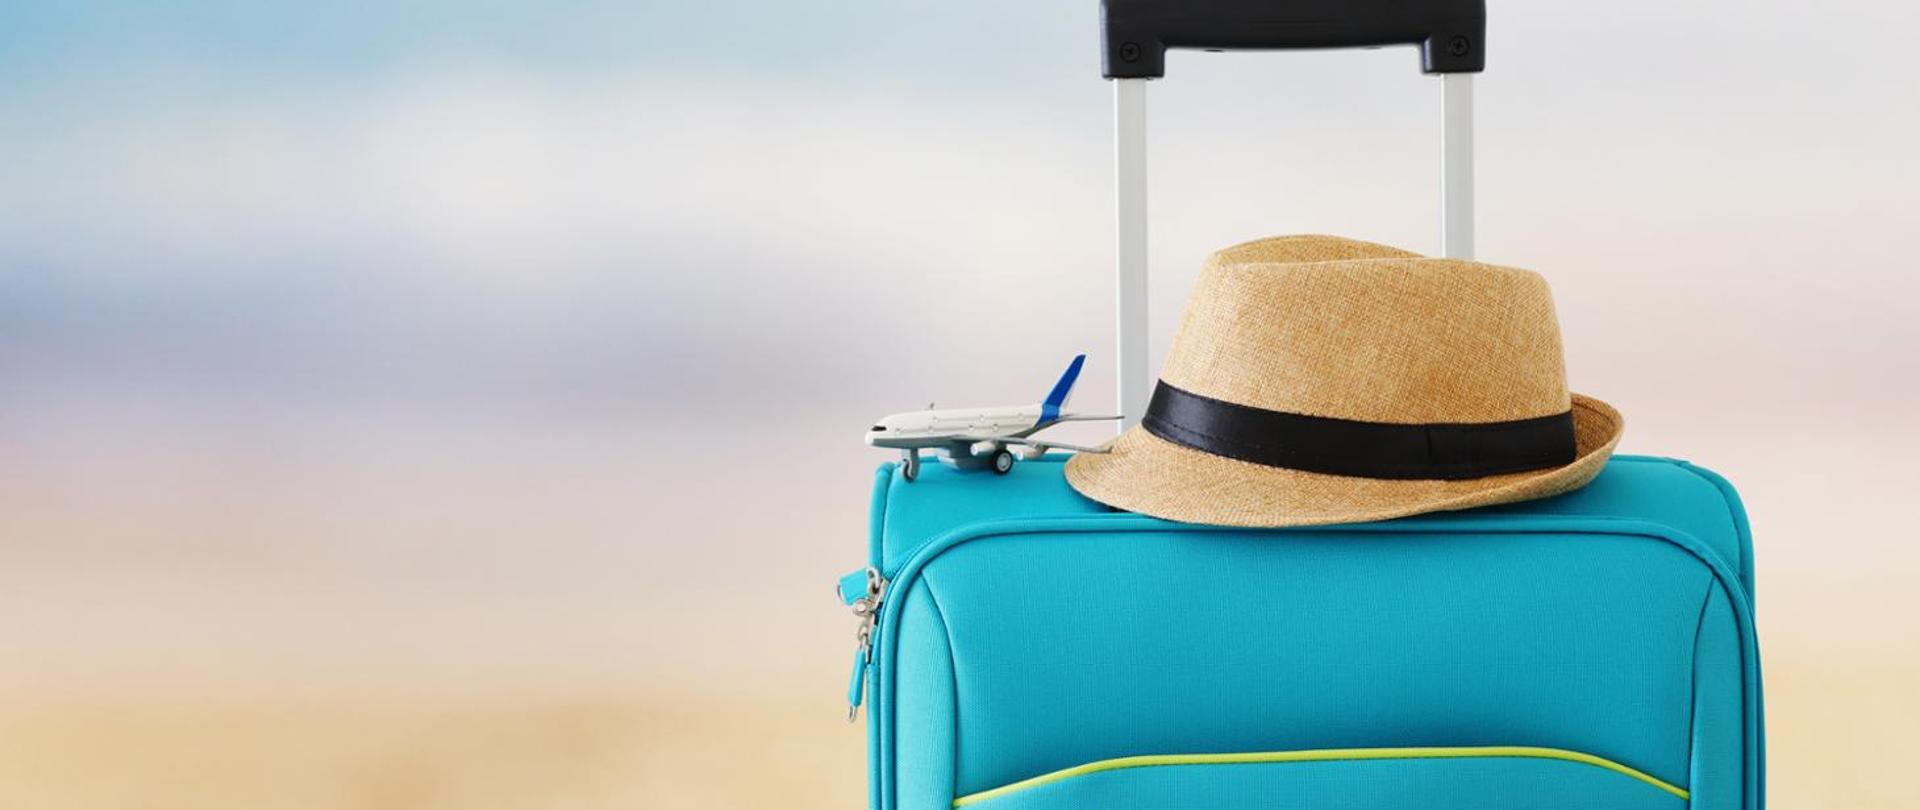 Po prawej stronie widać niebieską walizkę z wysuniętą rączką. Na walizce lezy miniaturka samolotu oraz kapelusz przeciwsłoneczny.